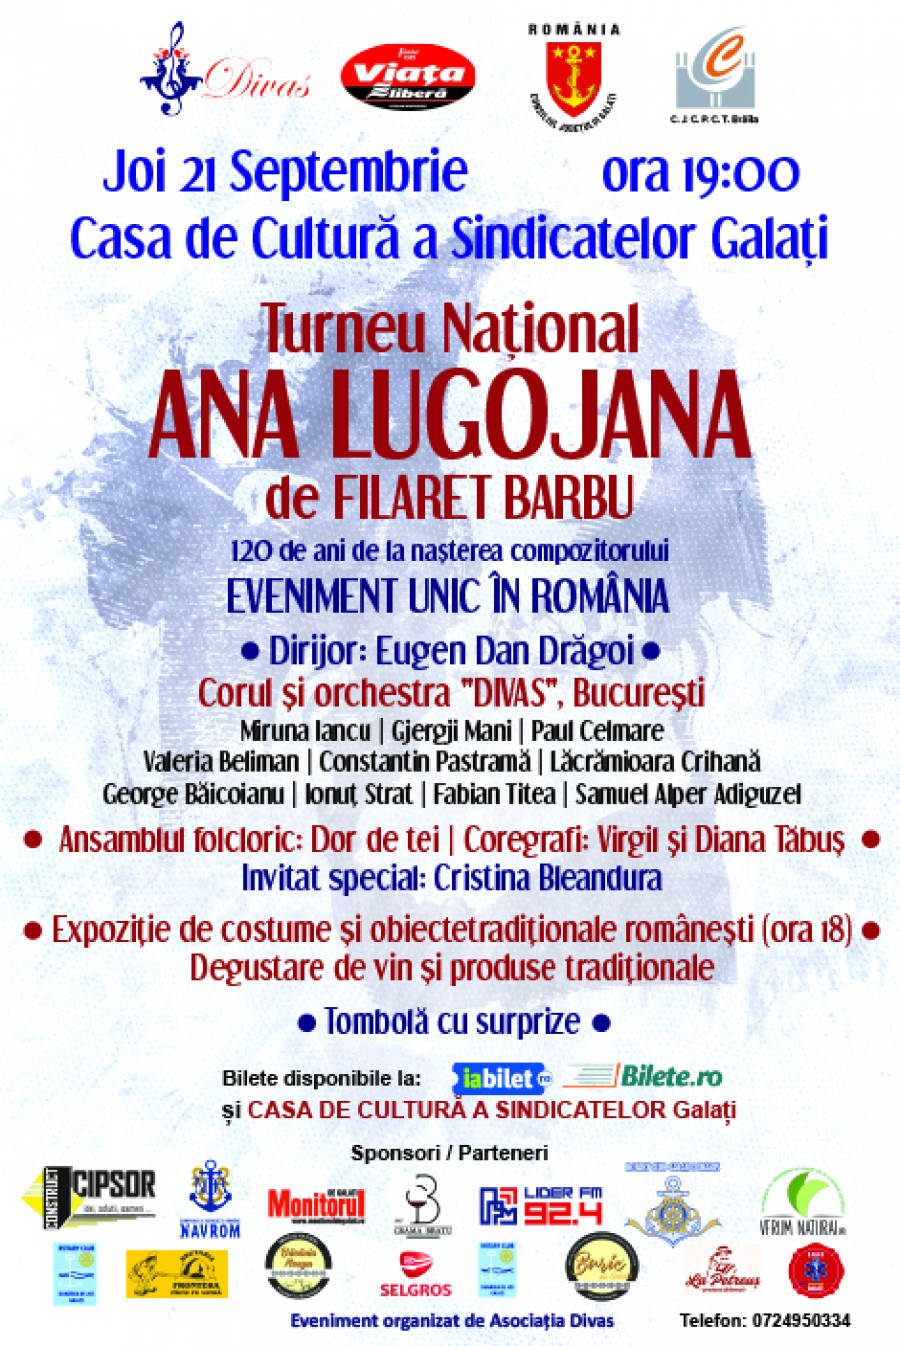 Opereta "Ana Lugojana", joia viitoare la Galați. Turneu național pentru promovarea culturii românești